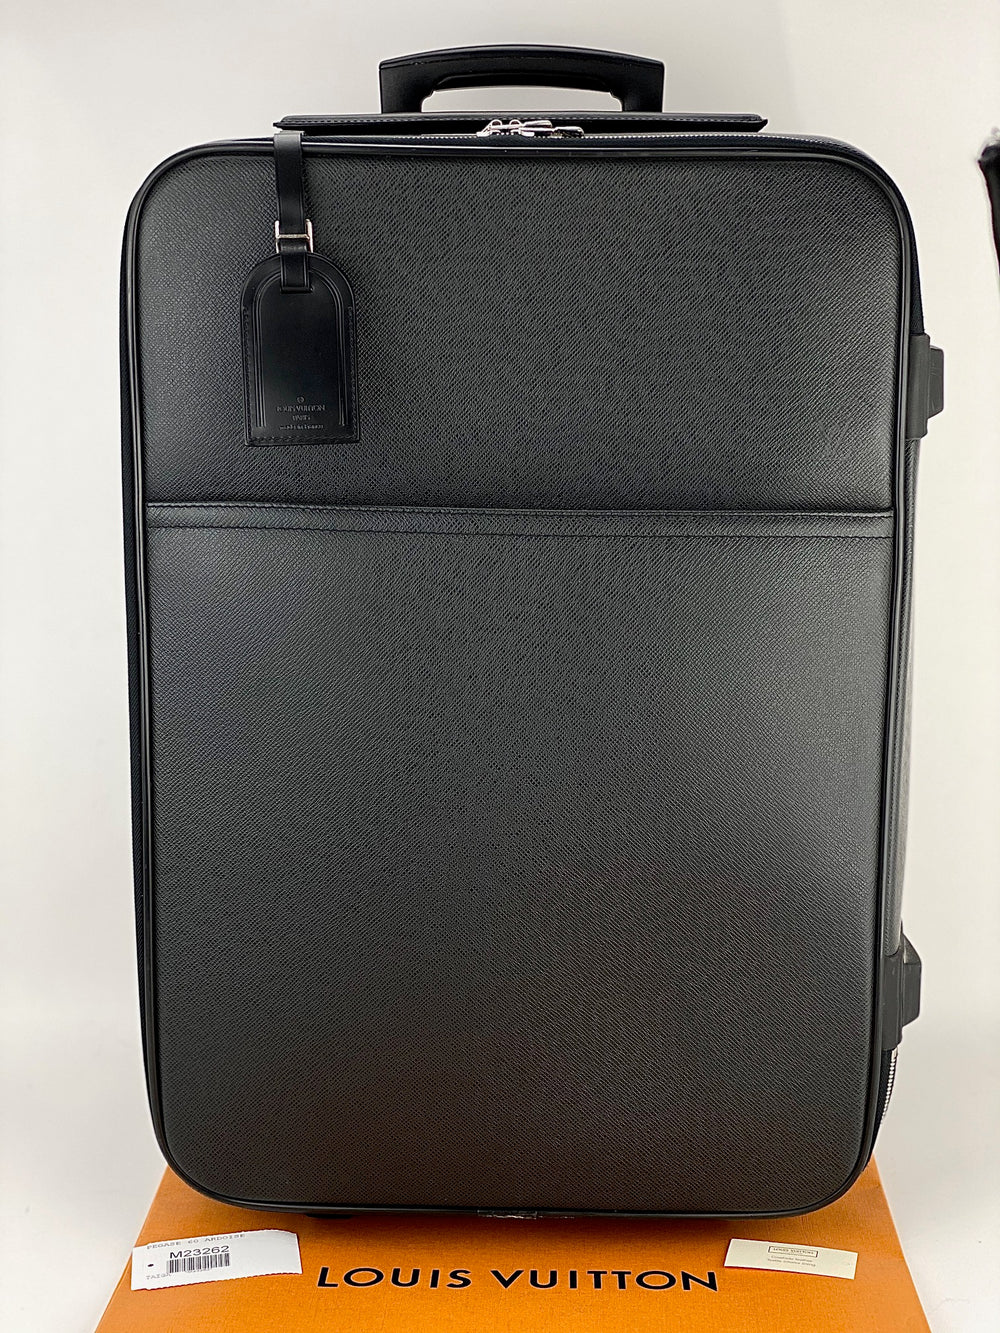 Bags, Louis Vuitton Rolling Suitcase Pegase 55